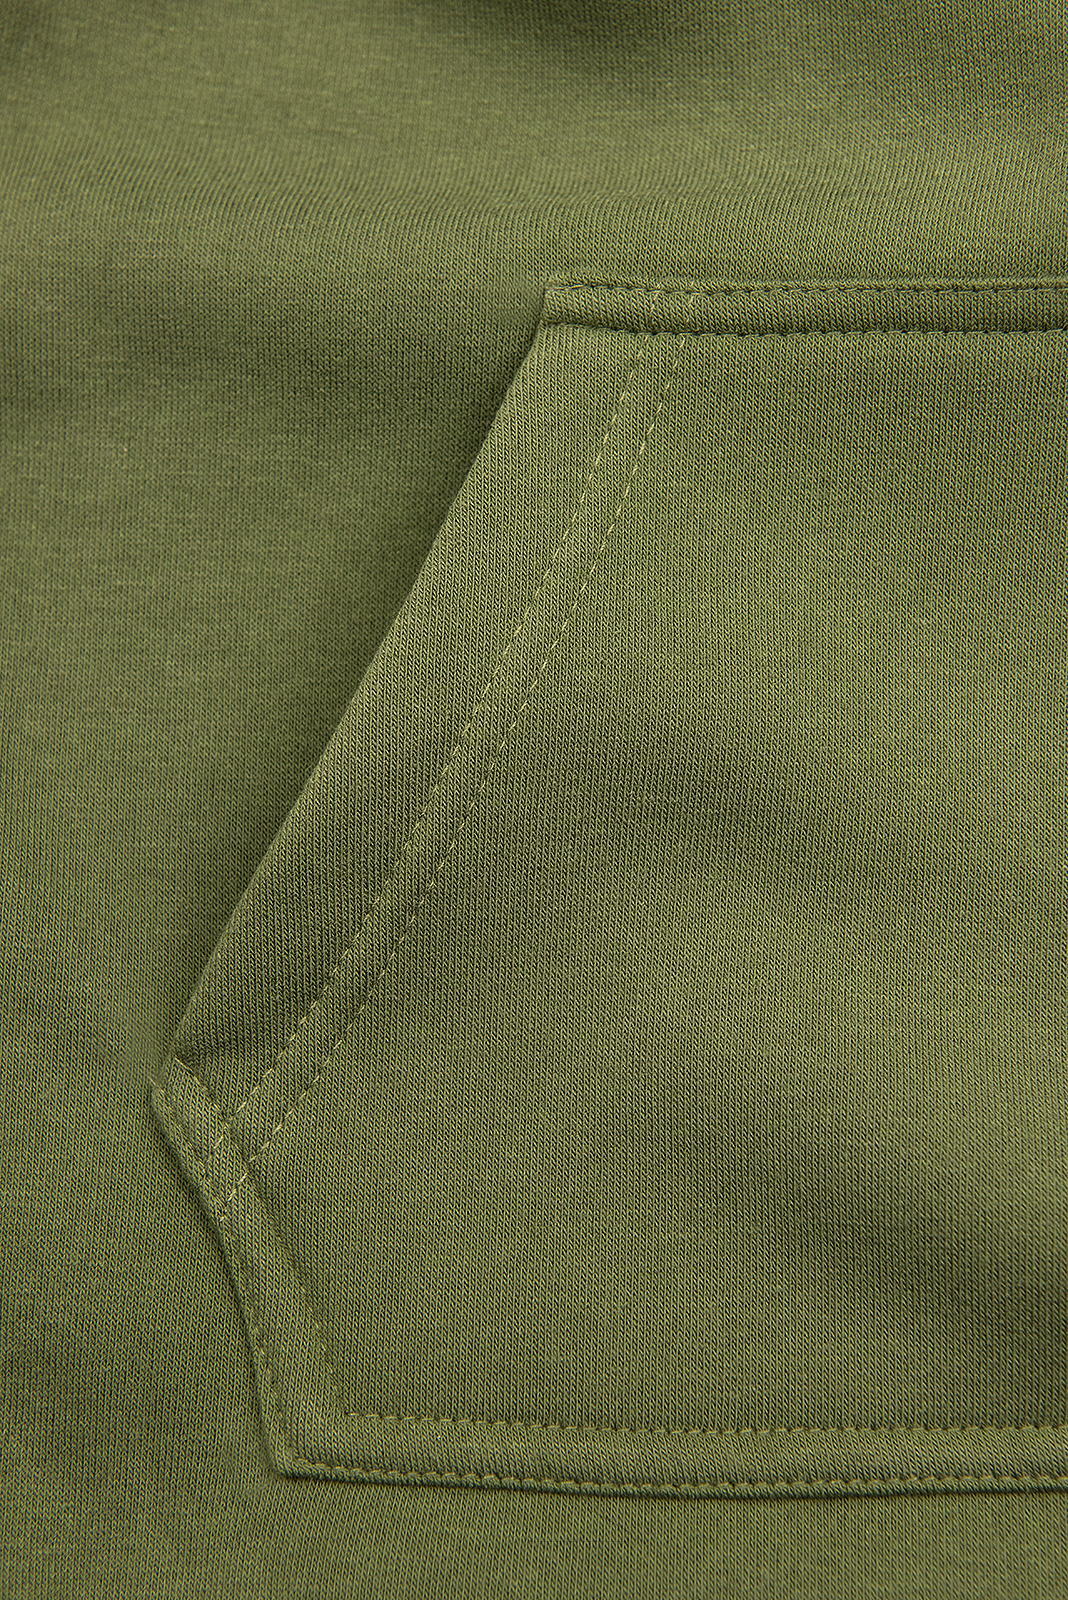 Zelená mikina s oblékáním přes hlavu